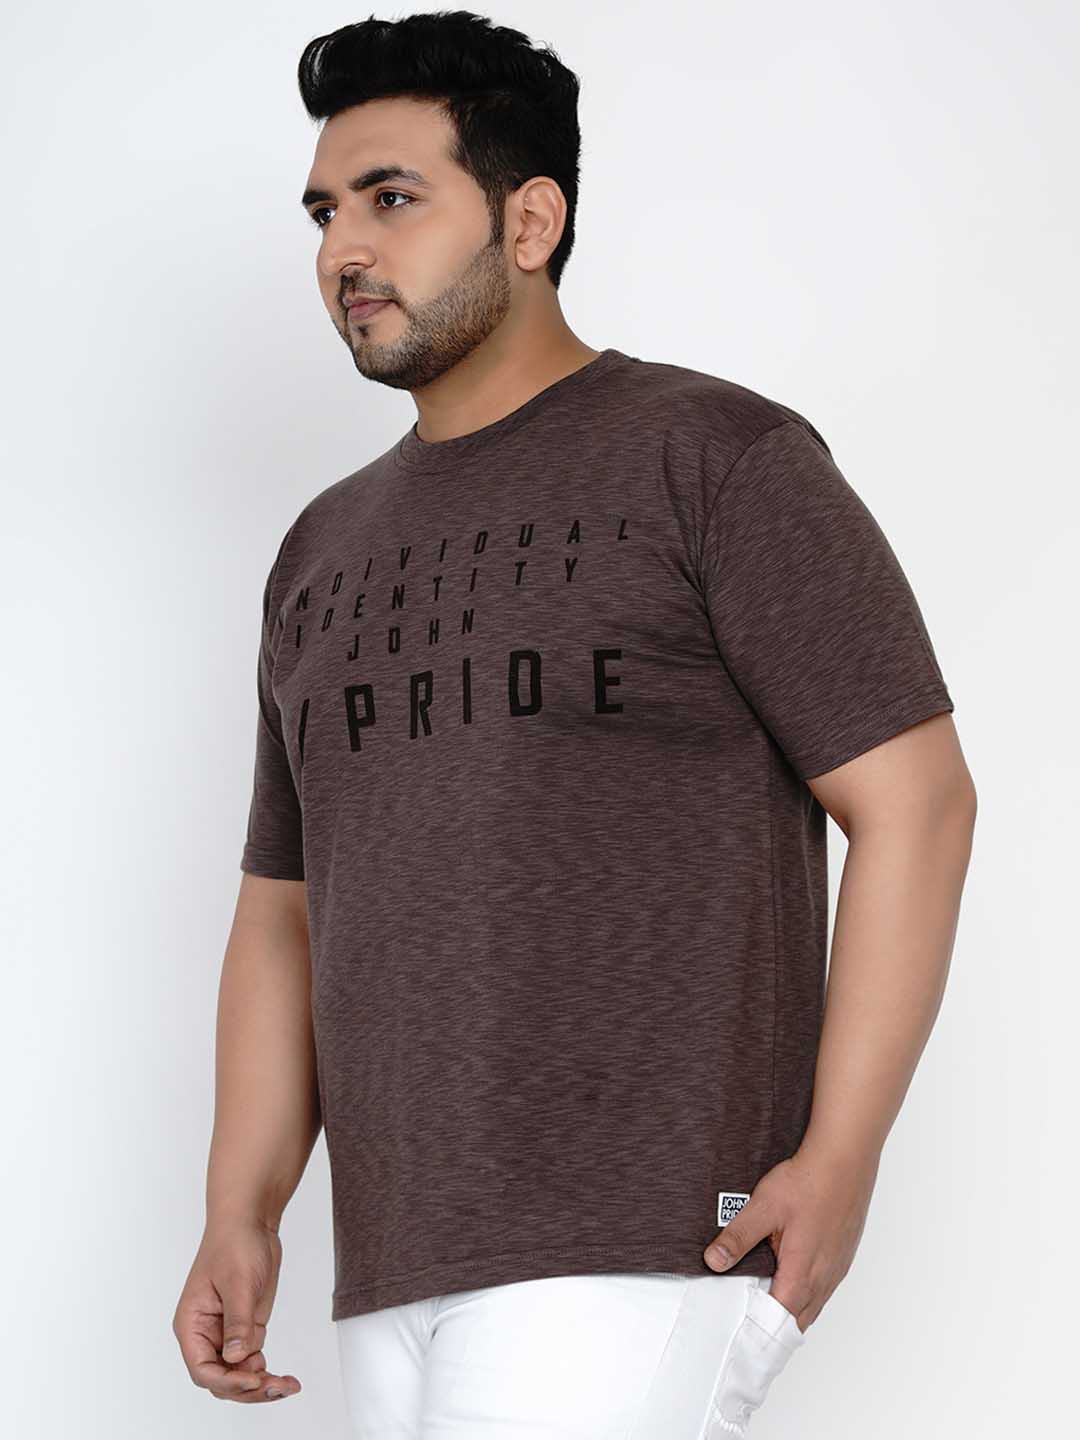 Plus Size Mens T shirts | 3XL, 5XL, Size Online